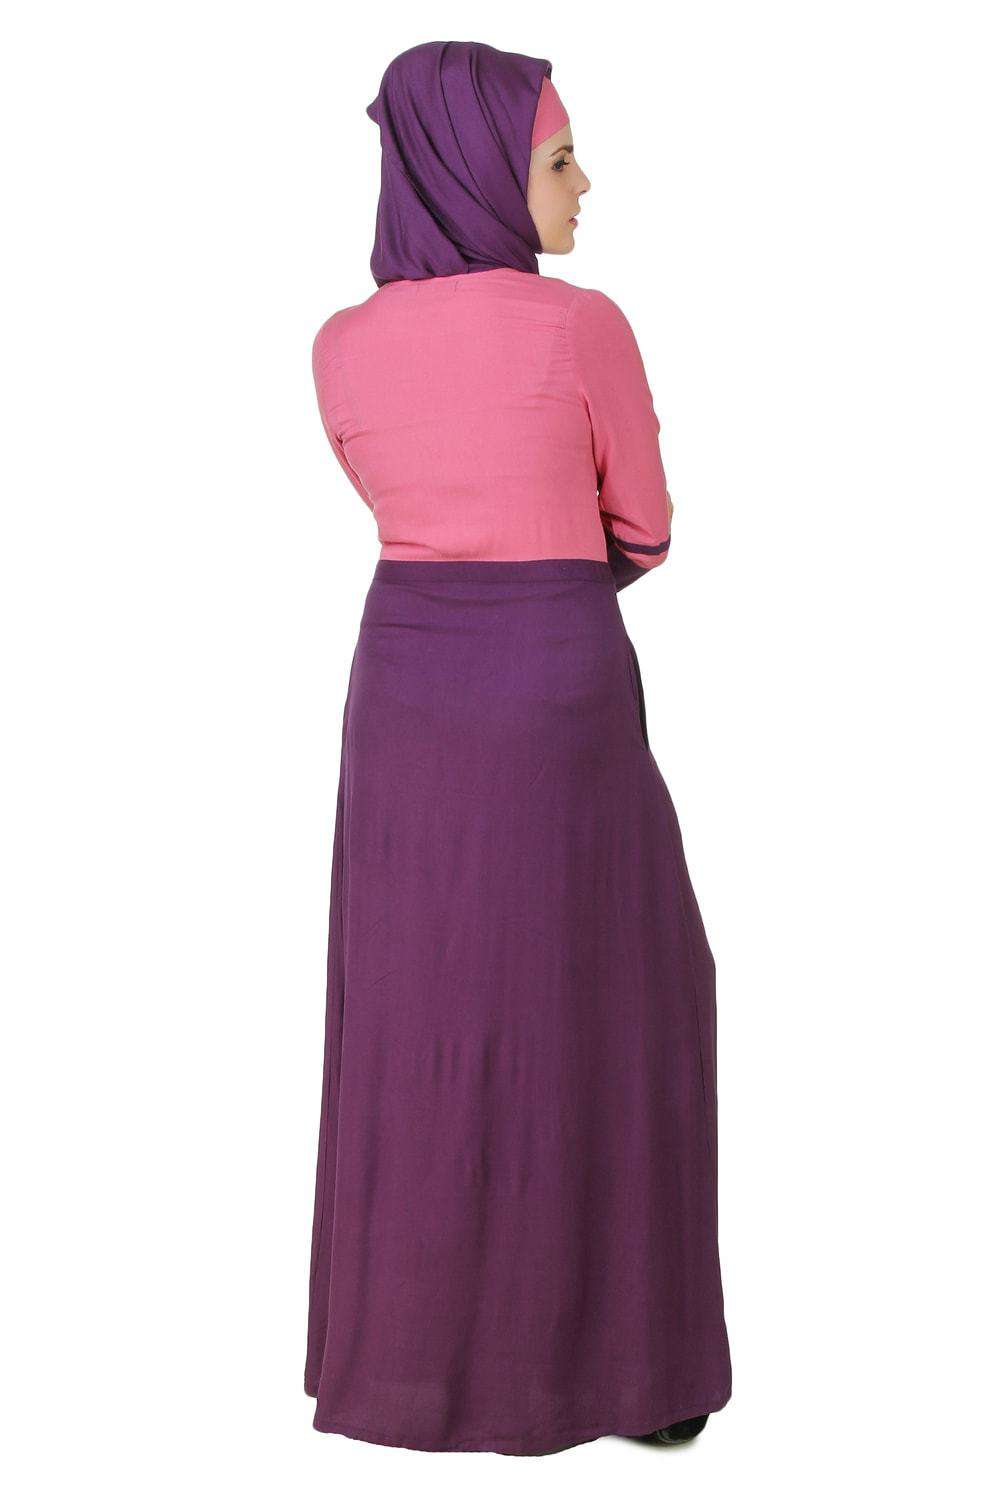 Noreen Pink & Purple Rayon Abaya Back